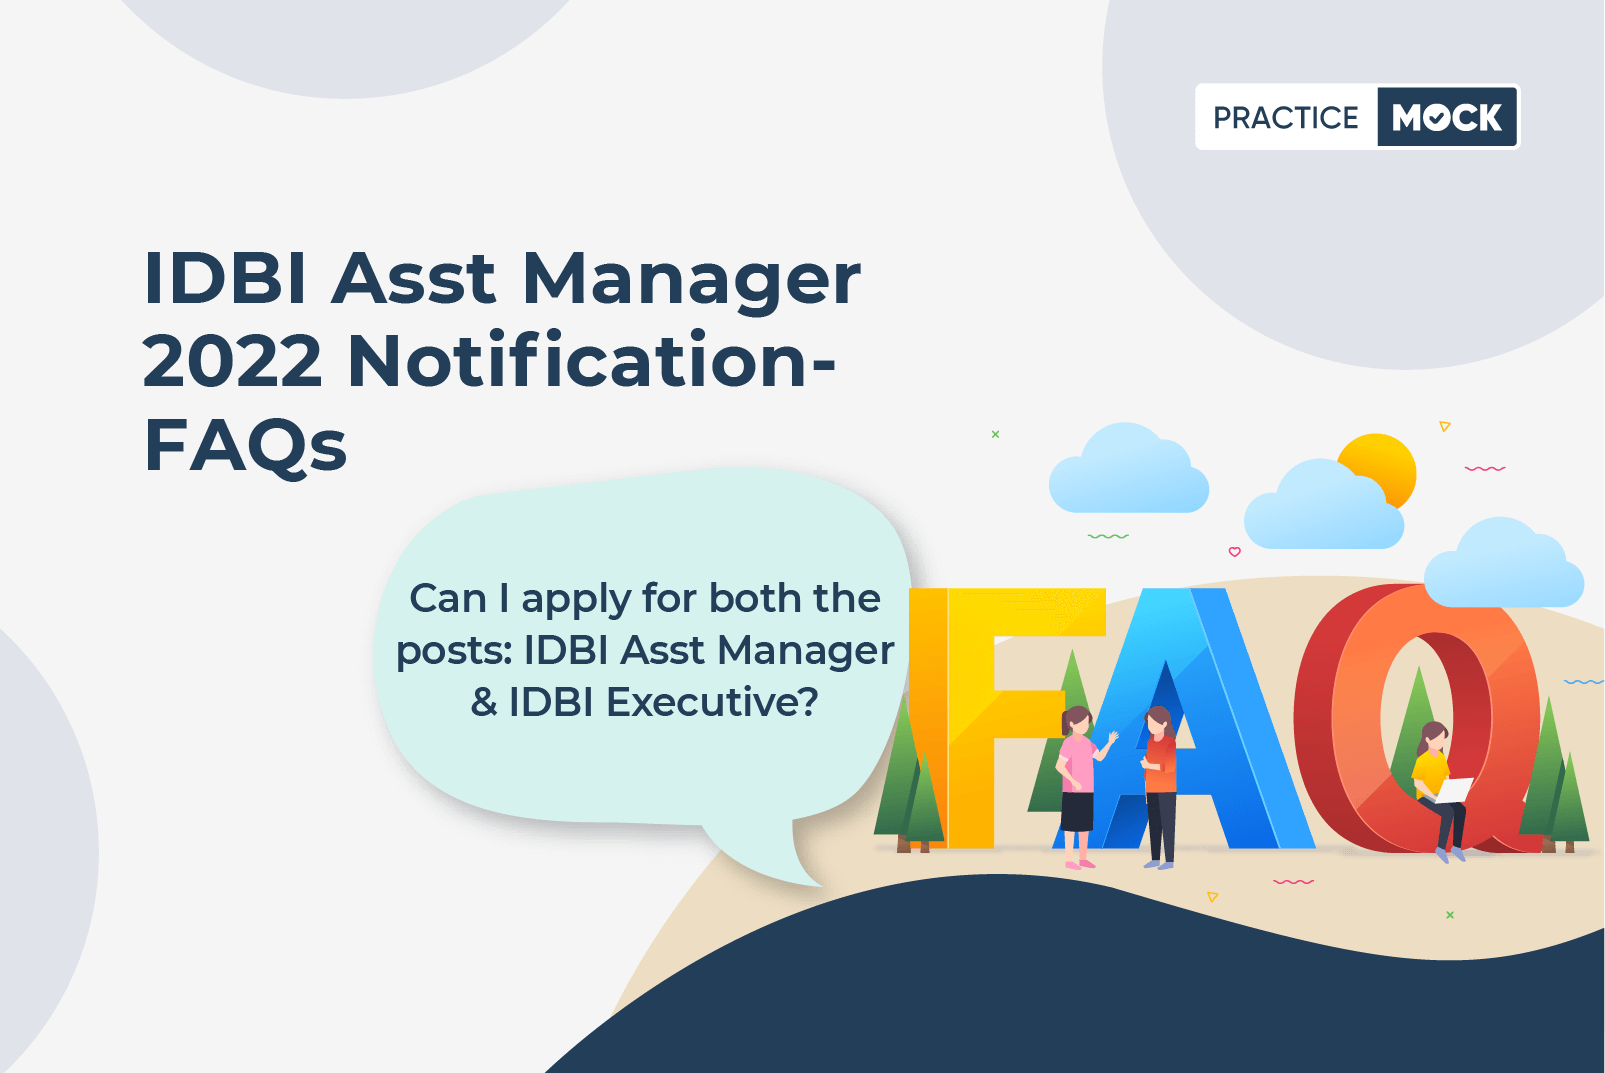 IDBI Asst Manager 2022 Notification- FAQs